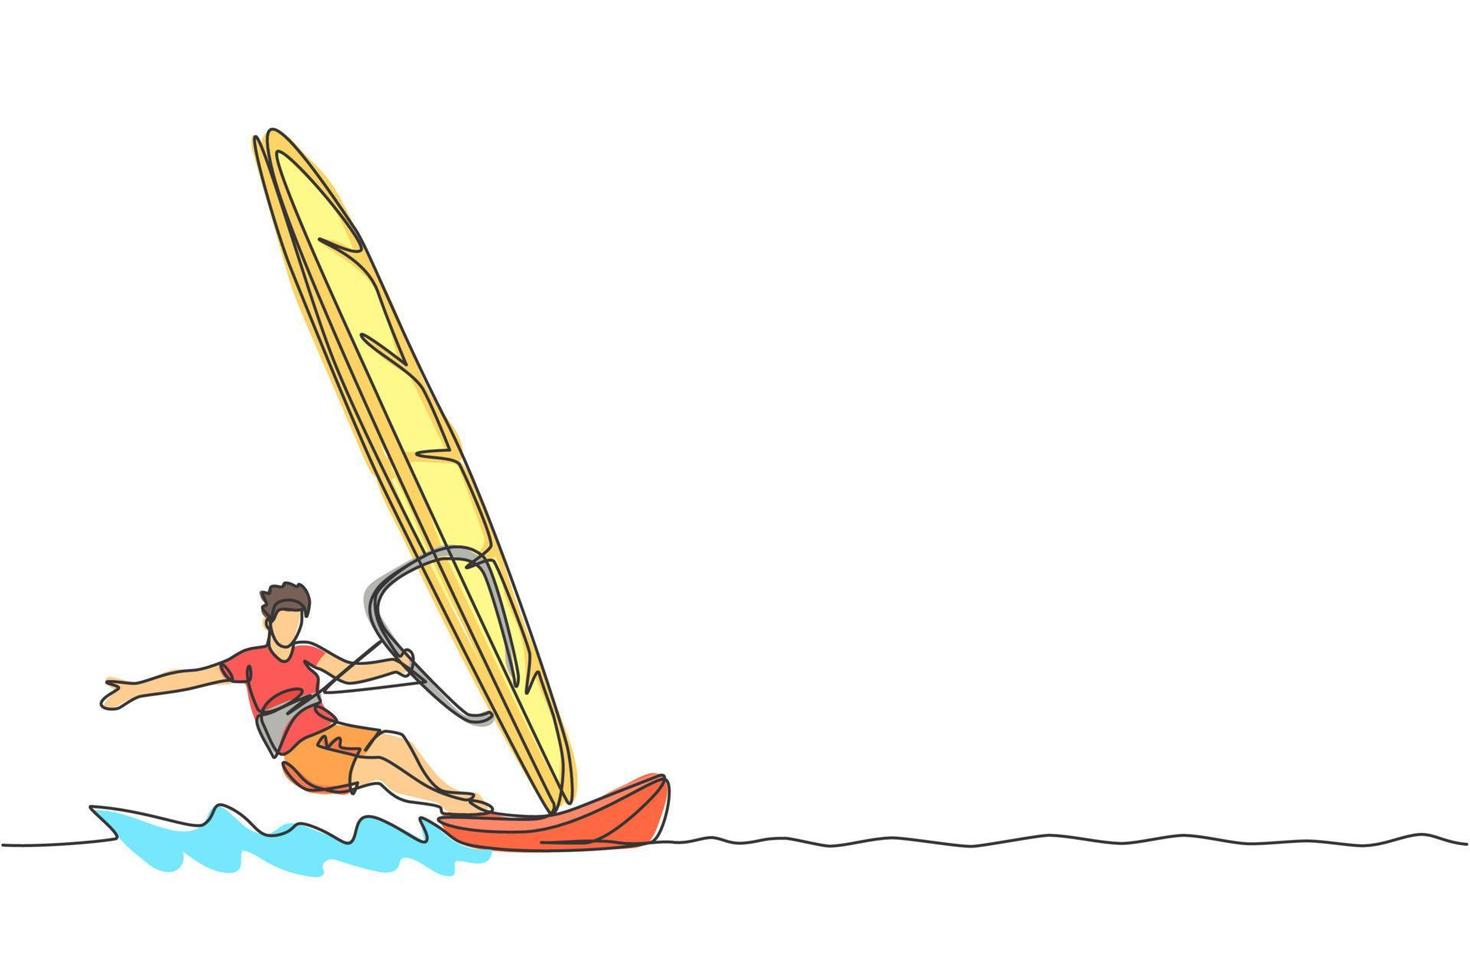 disegno a linea continua singola di un giovane surfista sportivo che gioca a windsurf nel mare. concetto di sport marino estremamente pericoloso. vacanze estive. illustrazione vettoriale di disegno di una linea alla moda